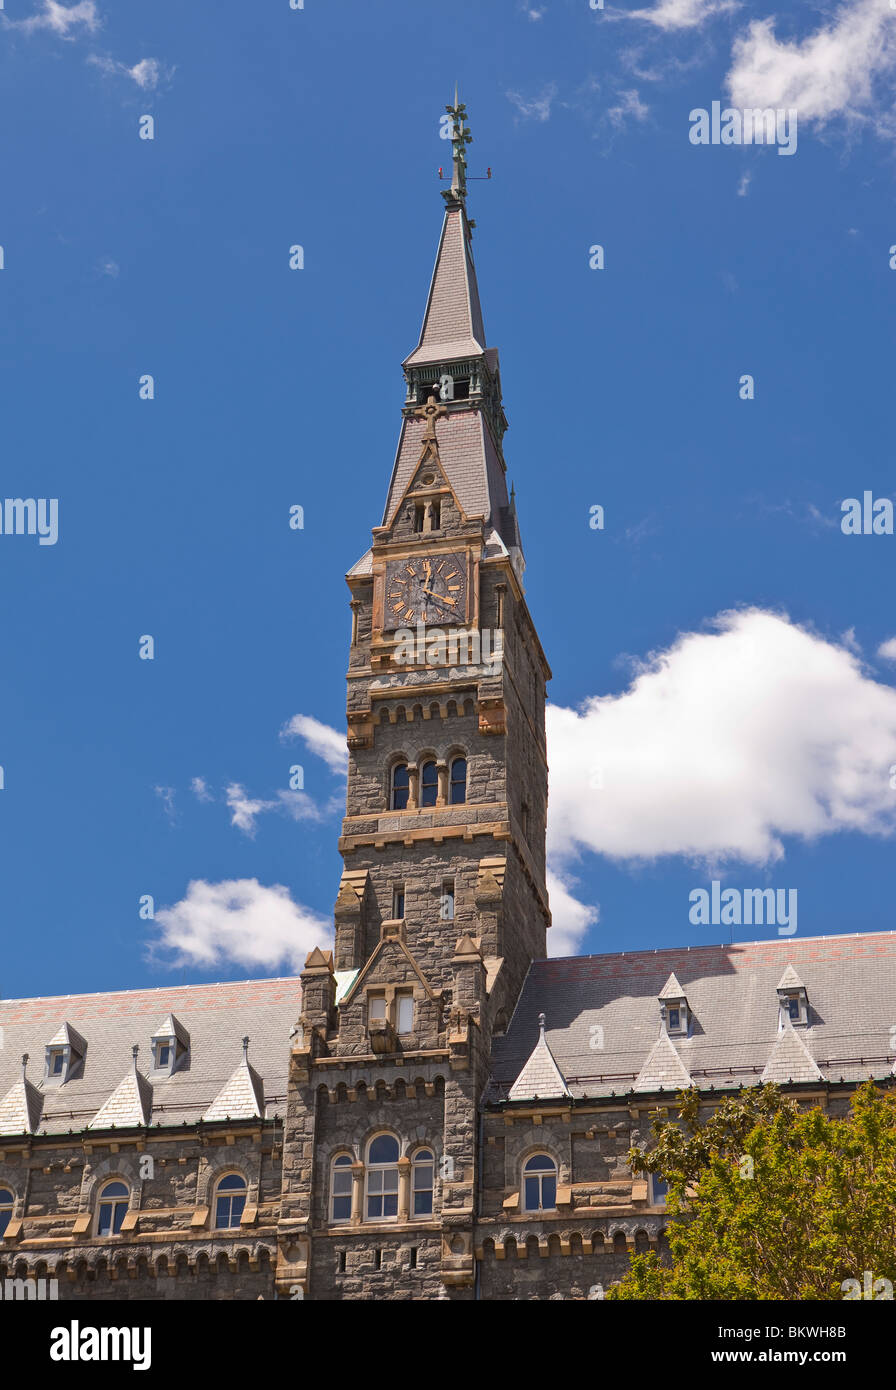 WASHINGTON, DC, Estados Unidos - Espira de Healy Hall en la Universidad de Georgetown. Foto de stock